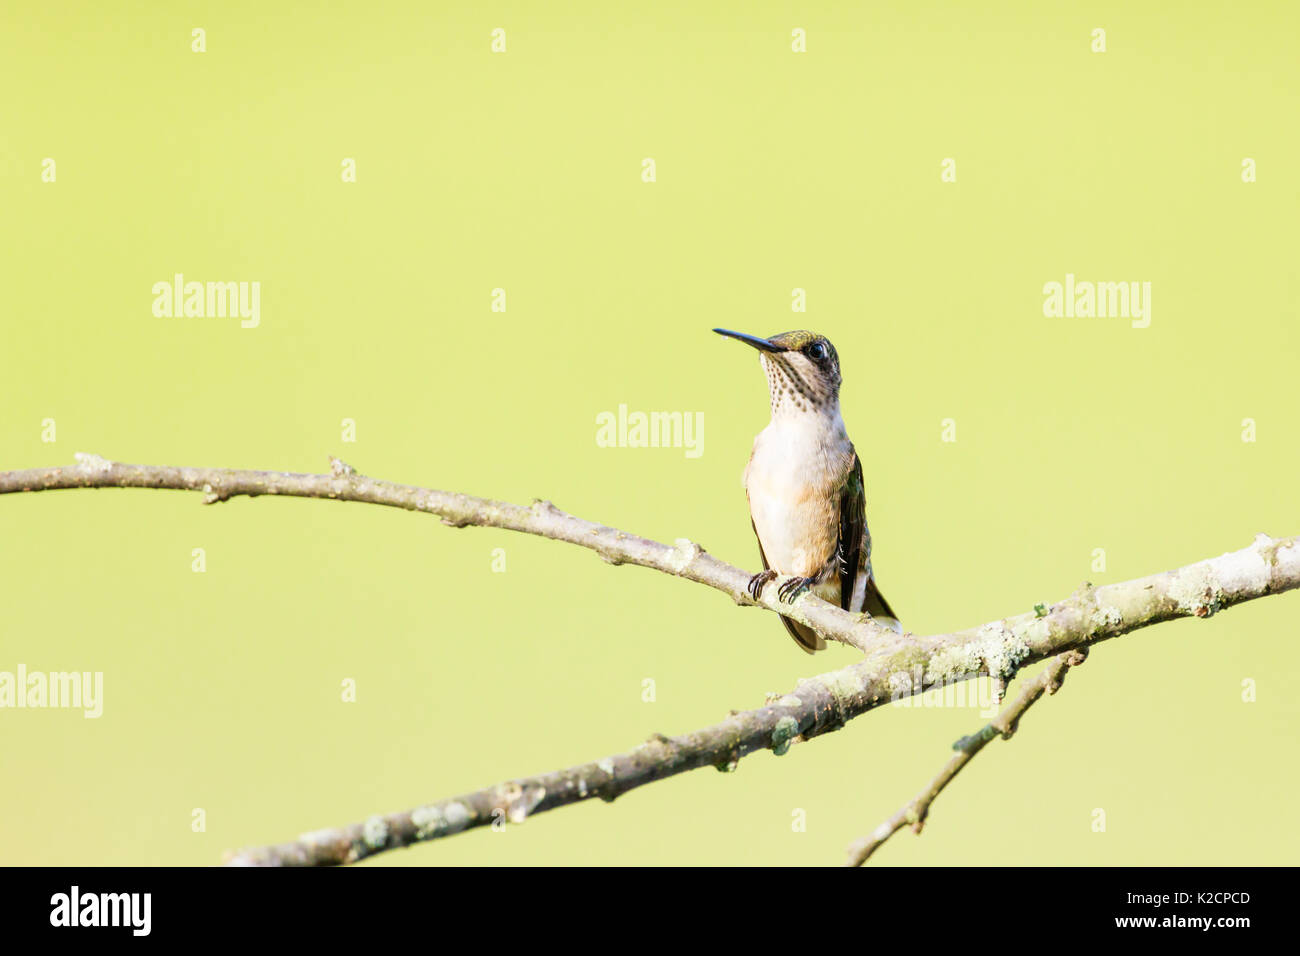 Femmina di Ruby-throated hummingbird, archilochus colubris, appollaiato su un ramo, girato dalla sua parte anteriore sinistra. Foto Stock